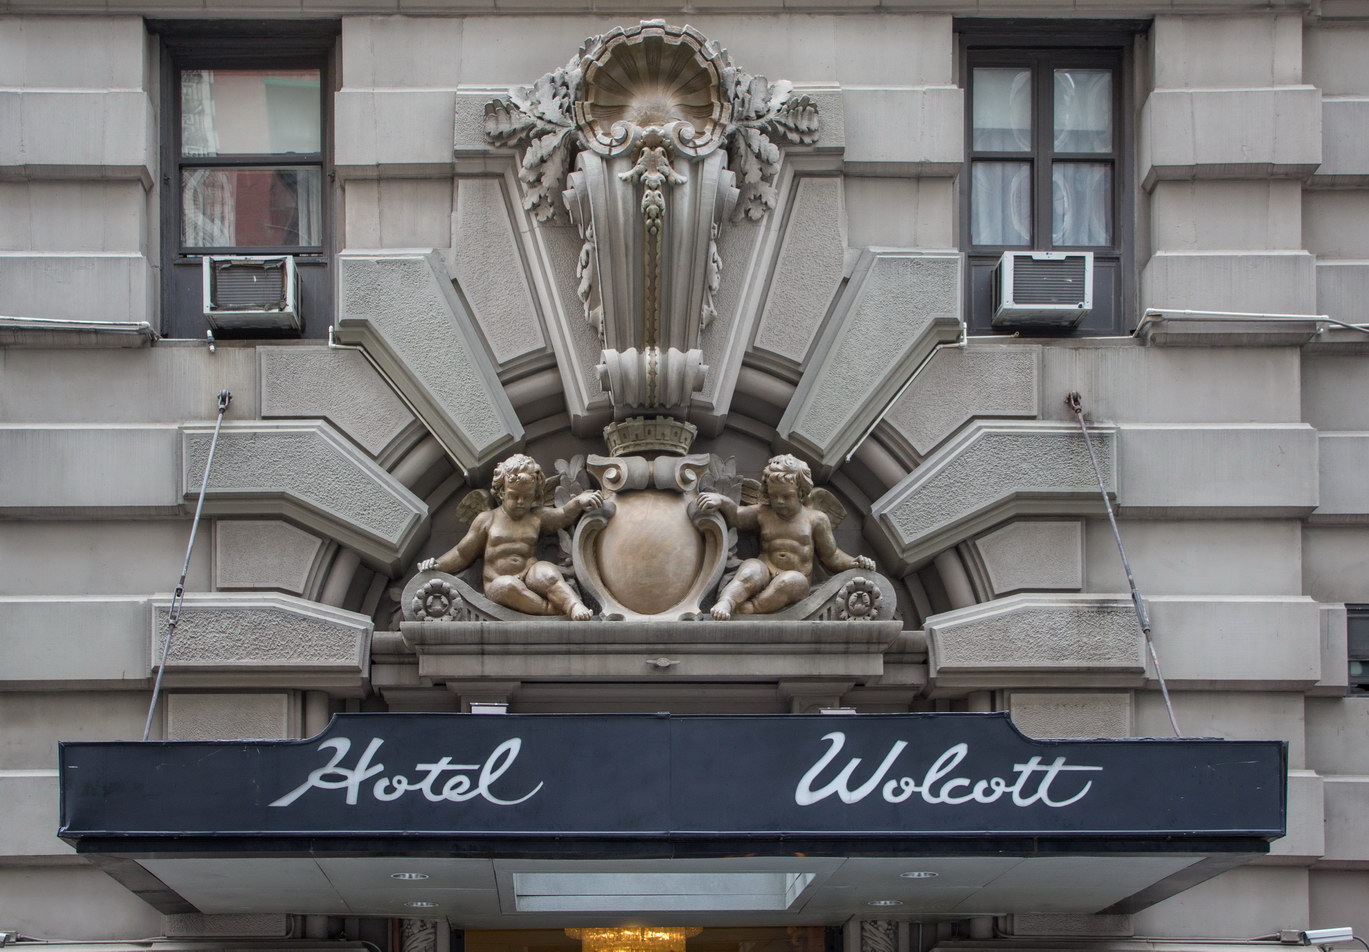 Hotel Wolcott - 4 W31st Street.